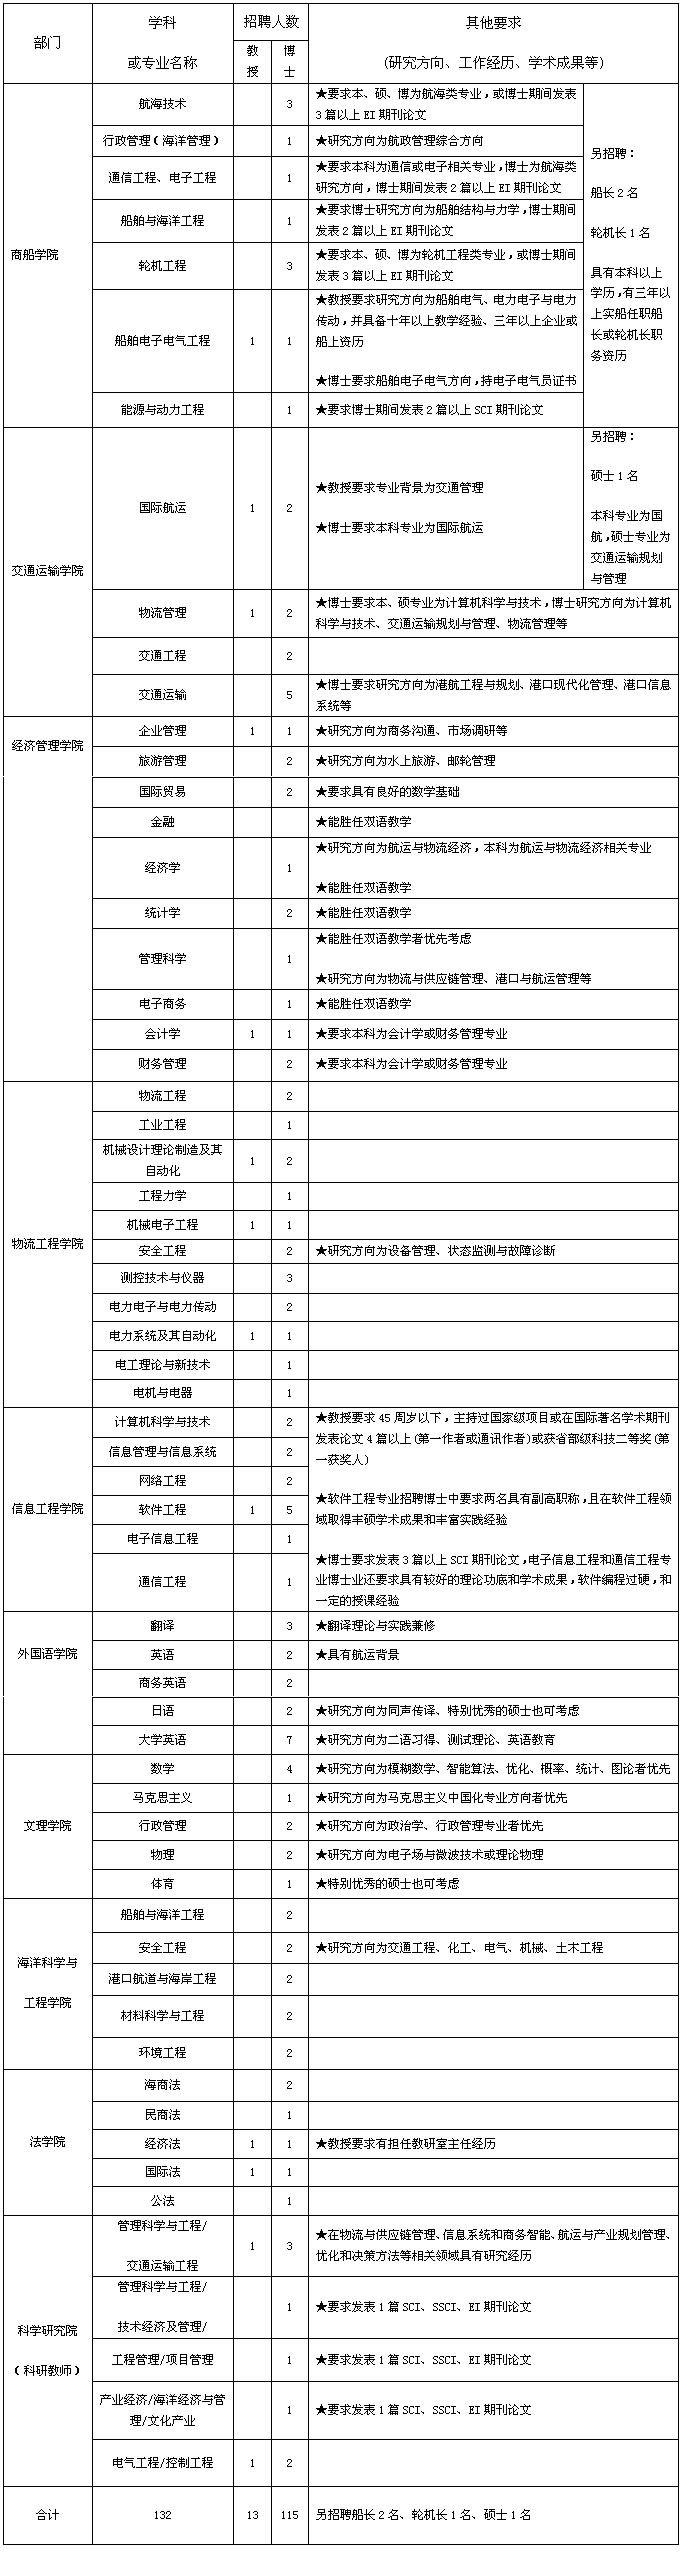 上海海事大学2015年教师招聘计划表